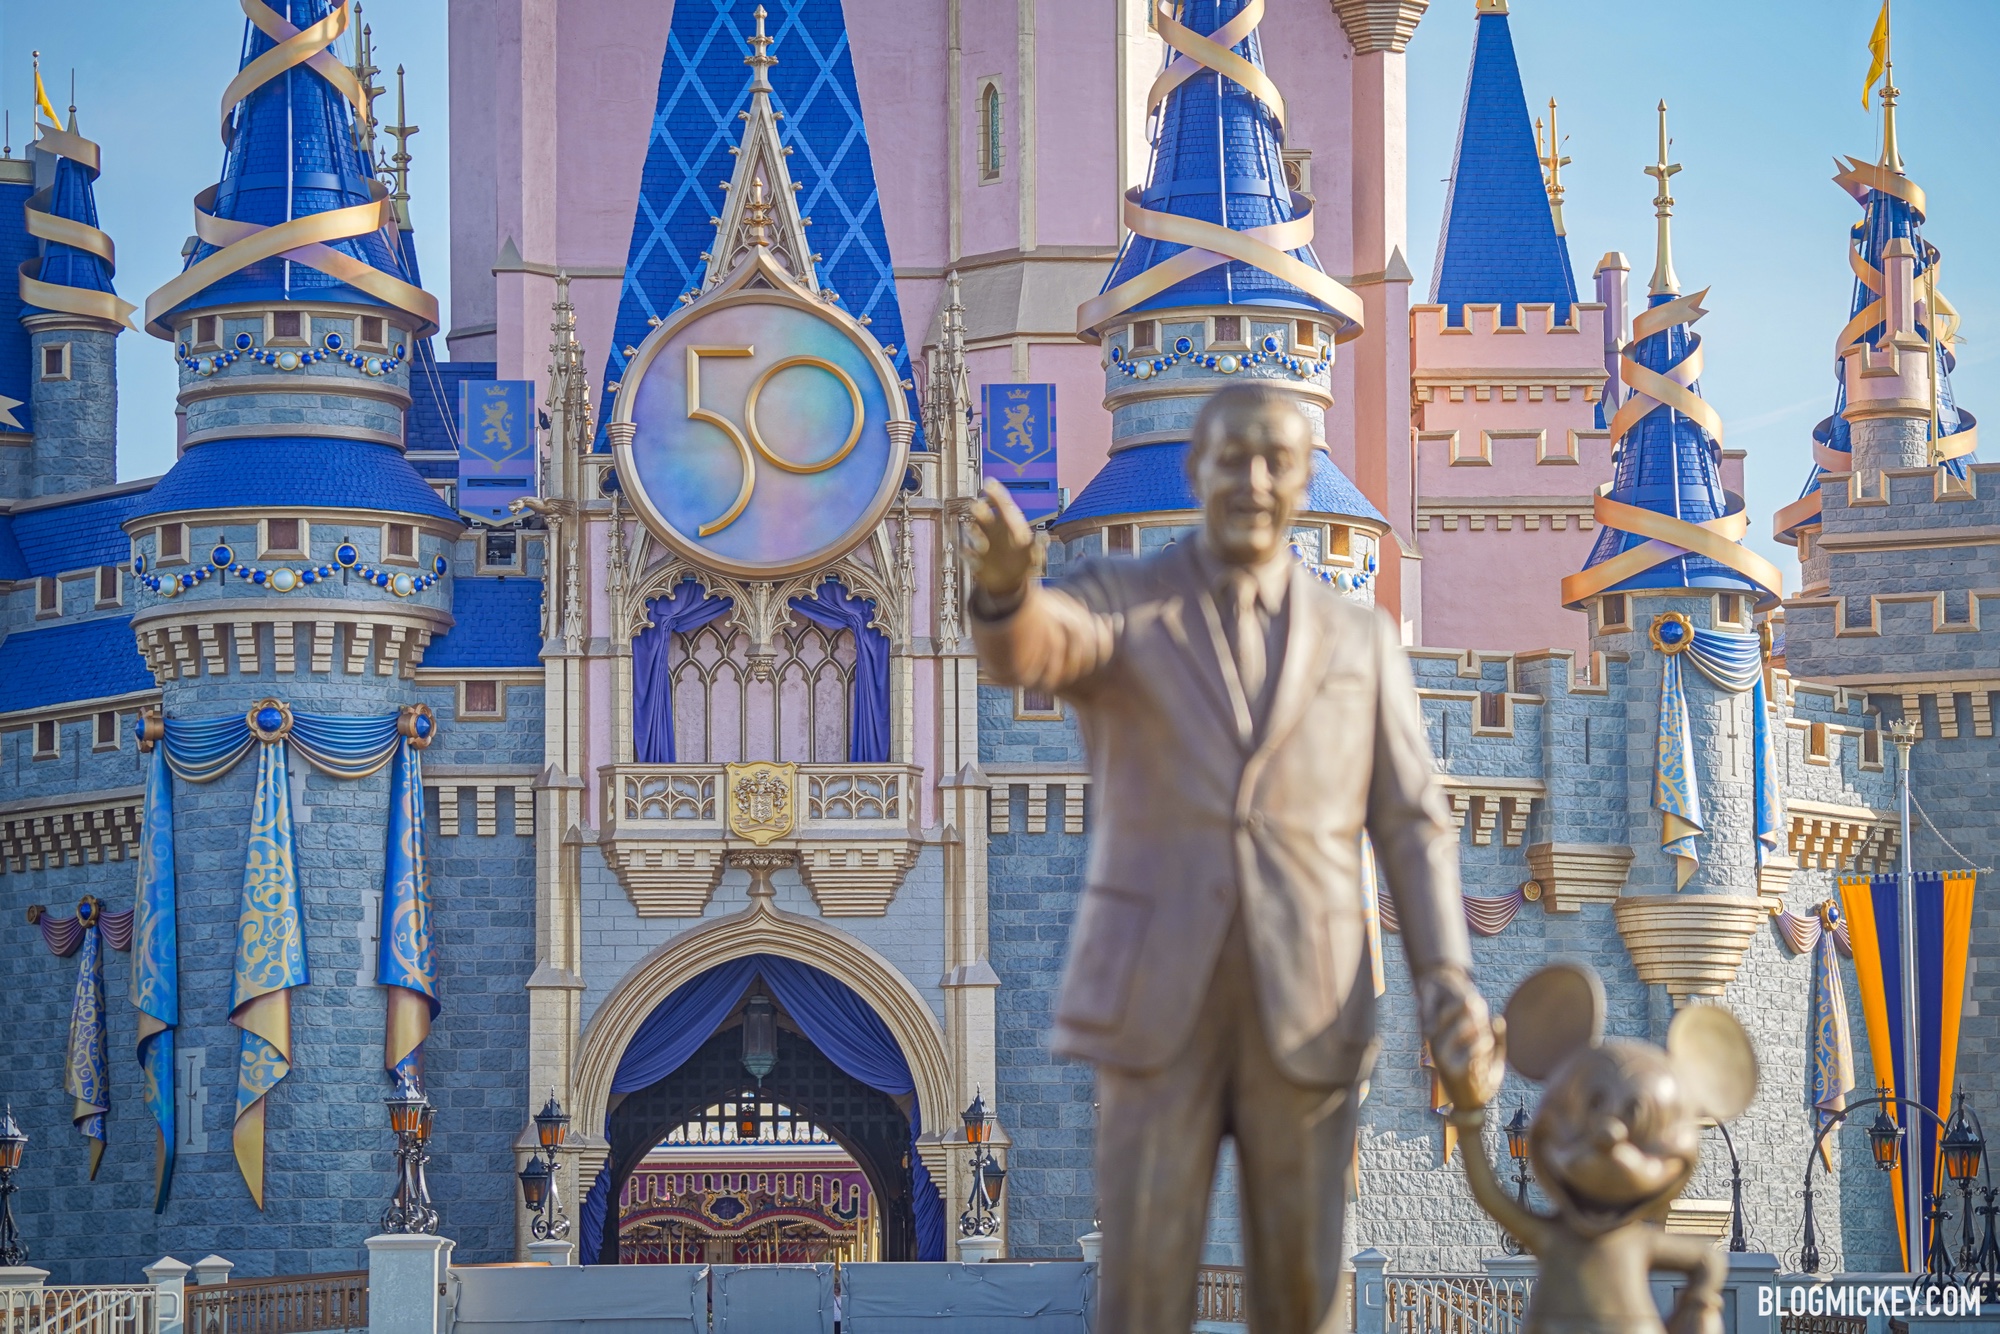 Hãy chiêm ngưỡng tòa lâu đài Điện Walt Disney xinh đẹp và ấn tượng như trong câu chuyện cổ tích. Disney Castle luôn là điểm đến hấp dẫn cho những ai yêu thích những câu chuyện lãng mạn và phấn khởi của Disney.